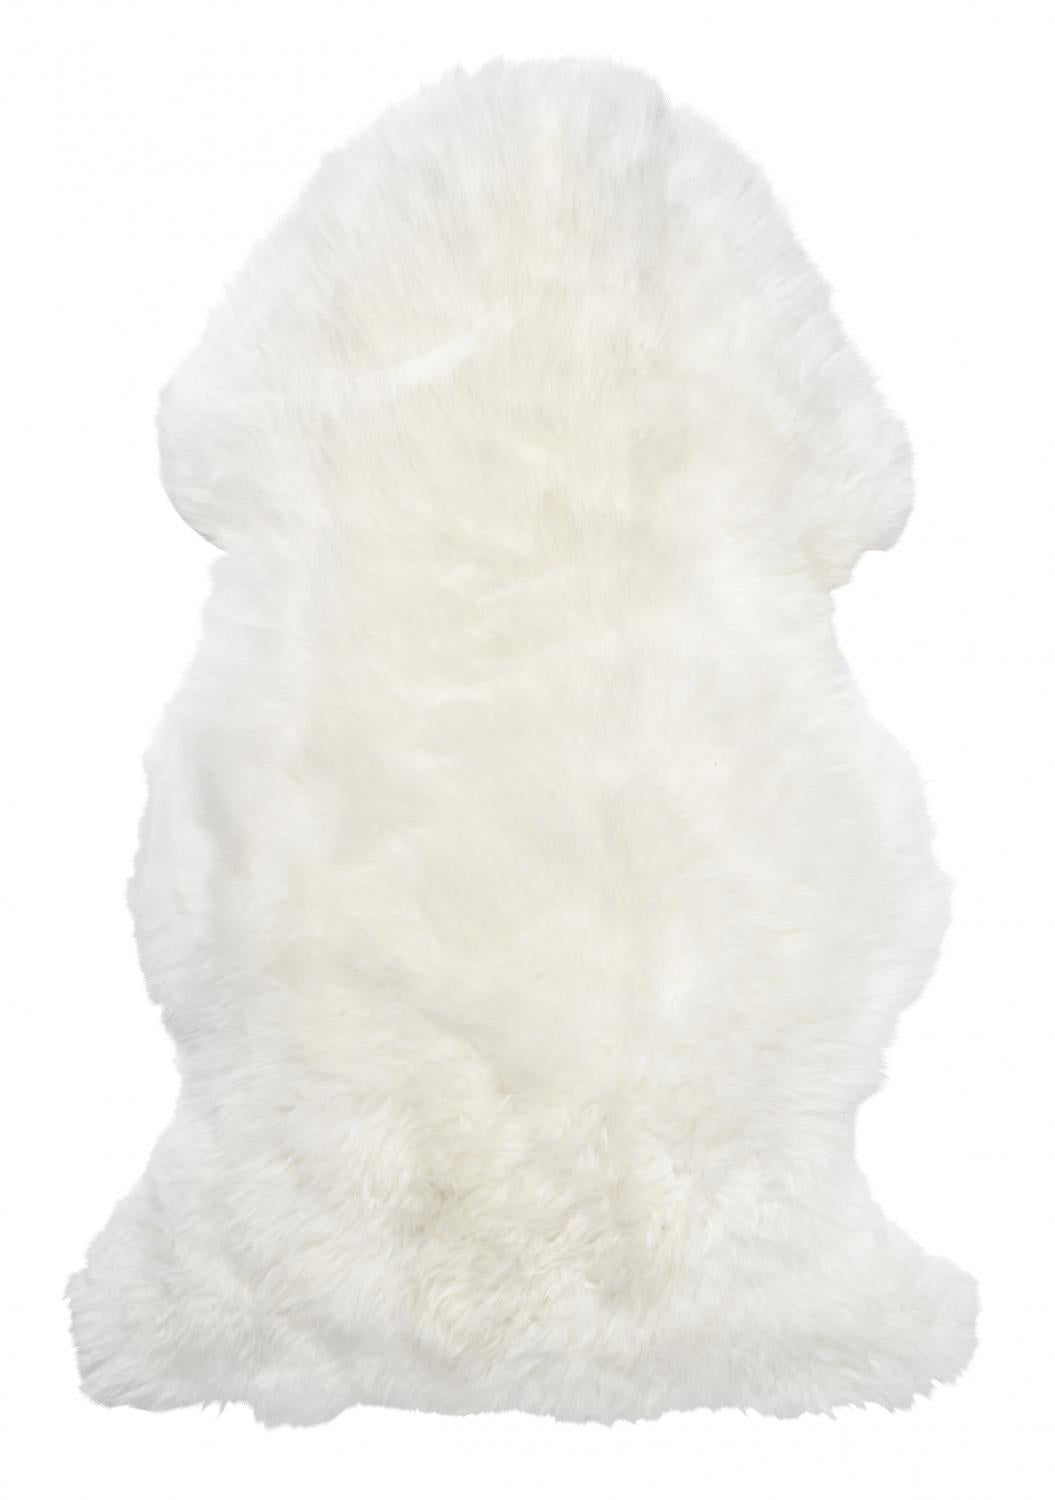 Gently Sheepskin - White 60x100 cm